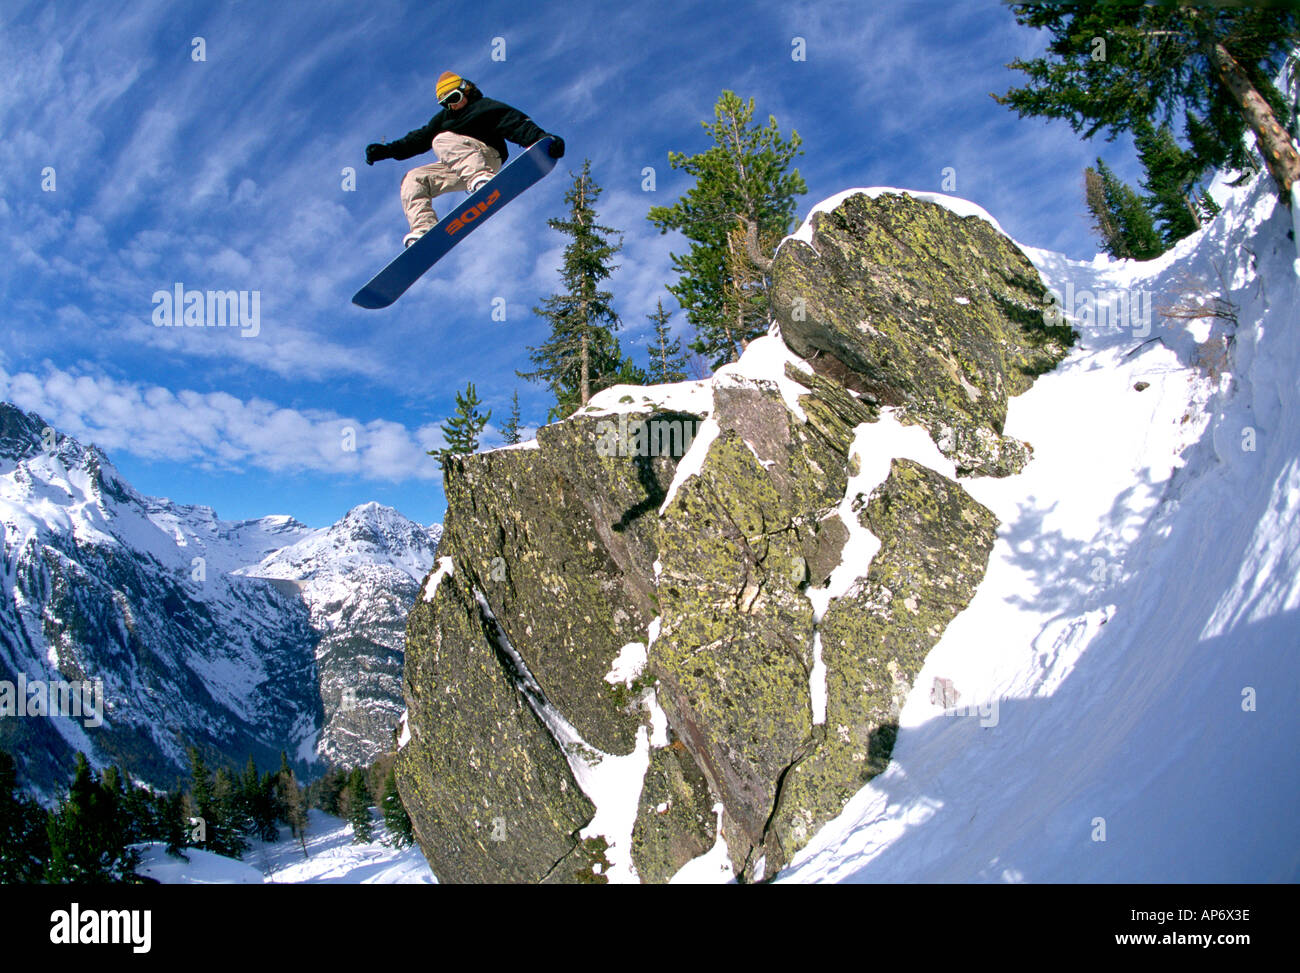 Mitte Luft Snowboarden Stunt- und Felsen, Jonny Barr, Chamonix, Frankreich Stockfoto